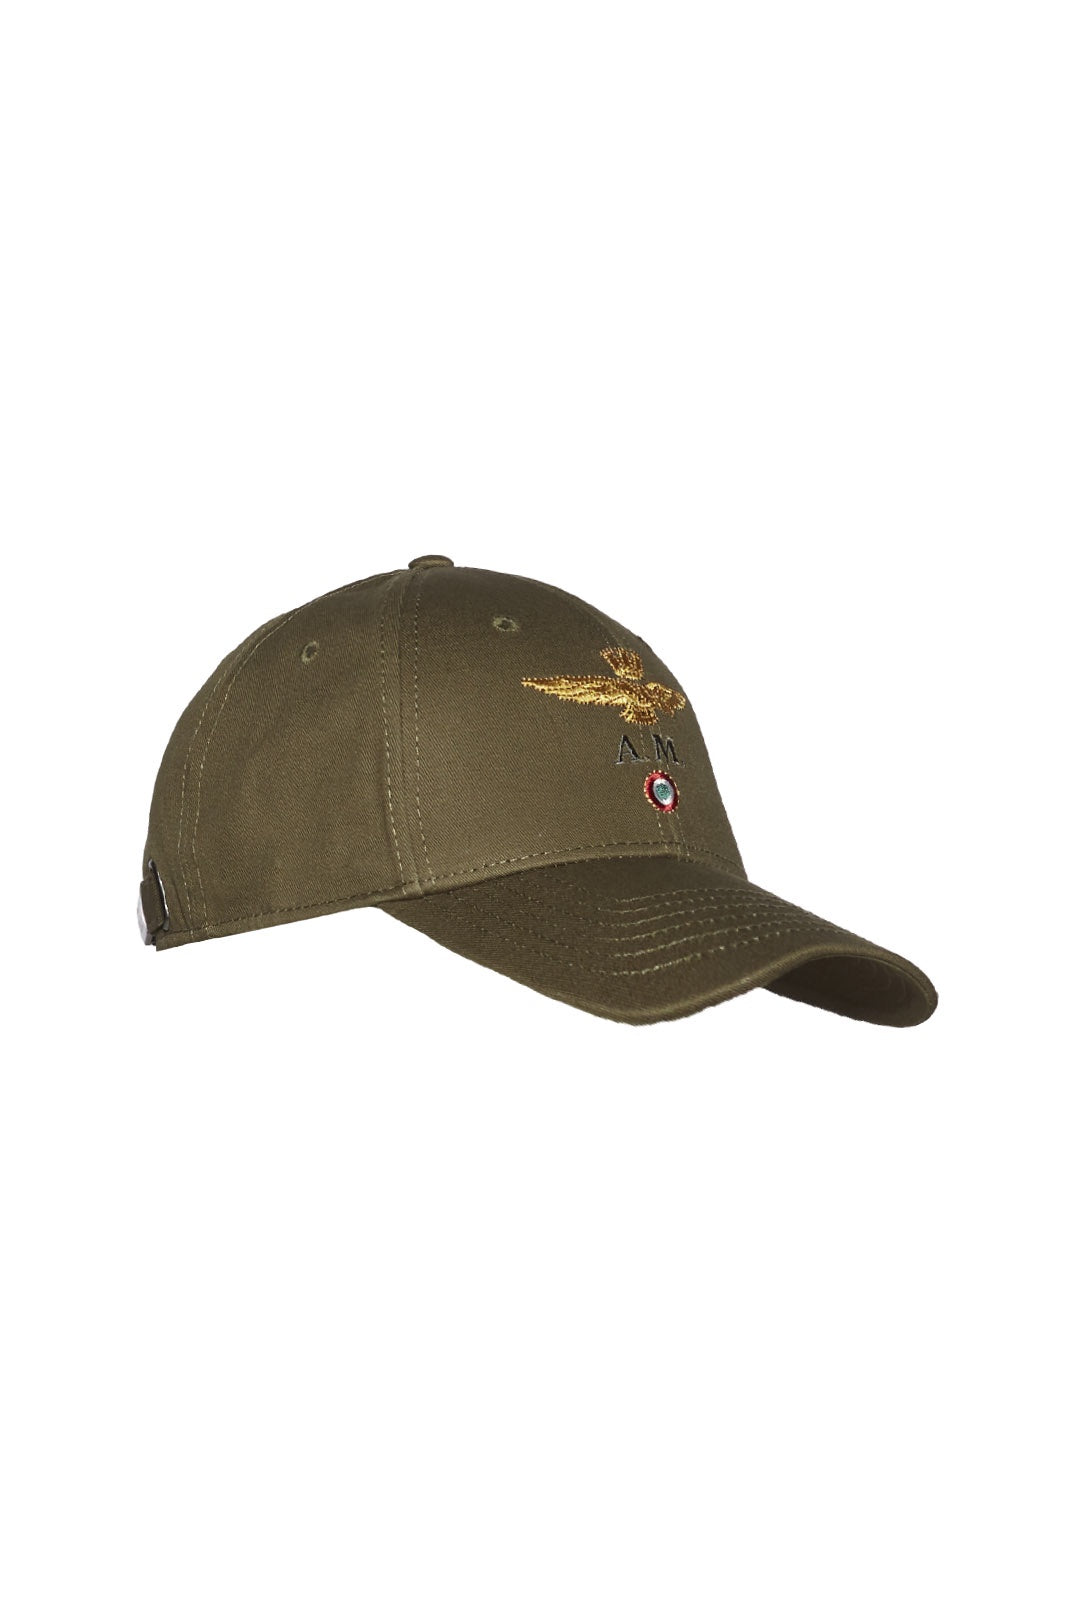 Cotton baseball cap with gold logo